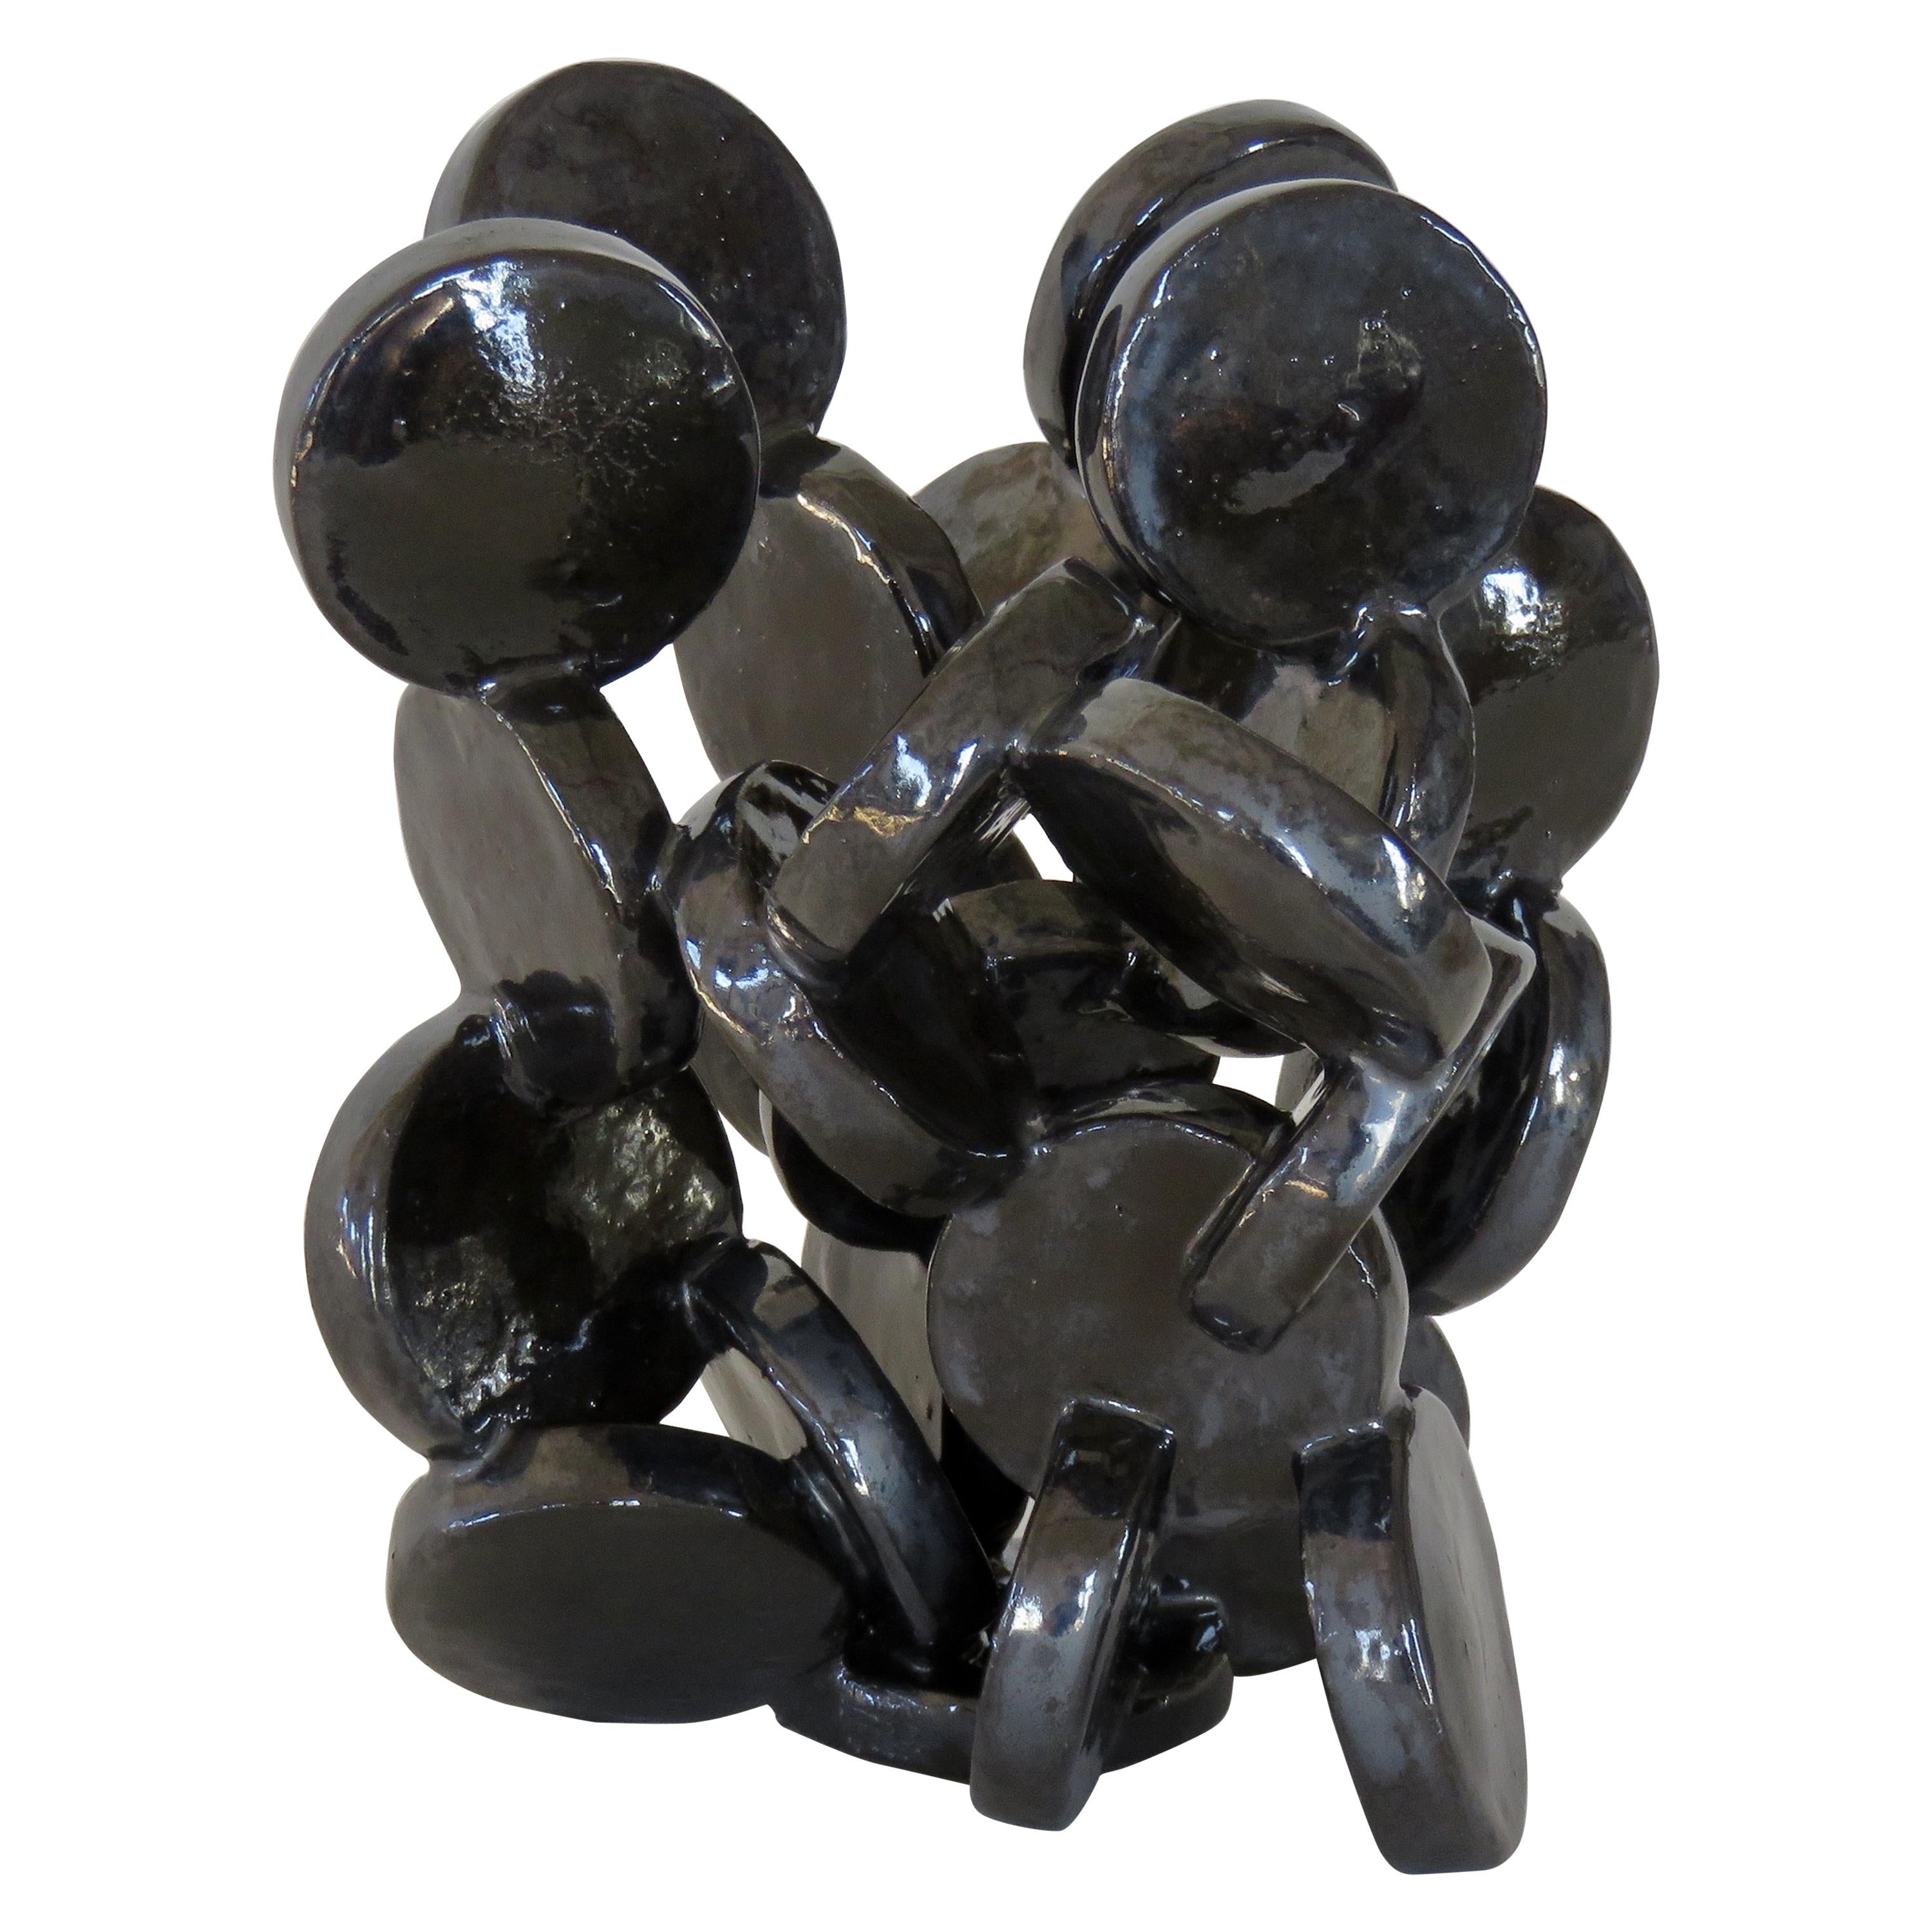 Shiny Black Discs, Handbuilt Abstract Ceramic Sculpture